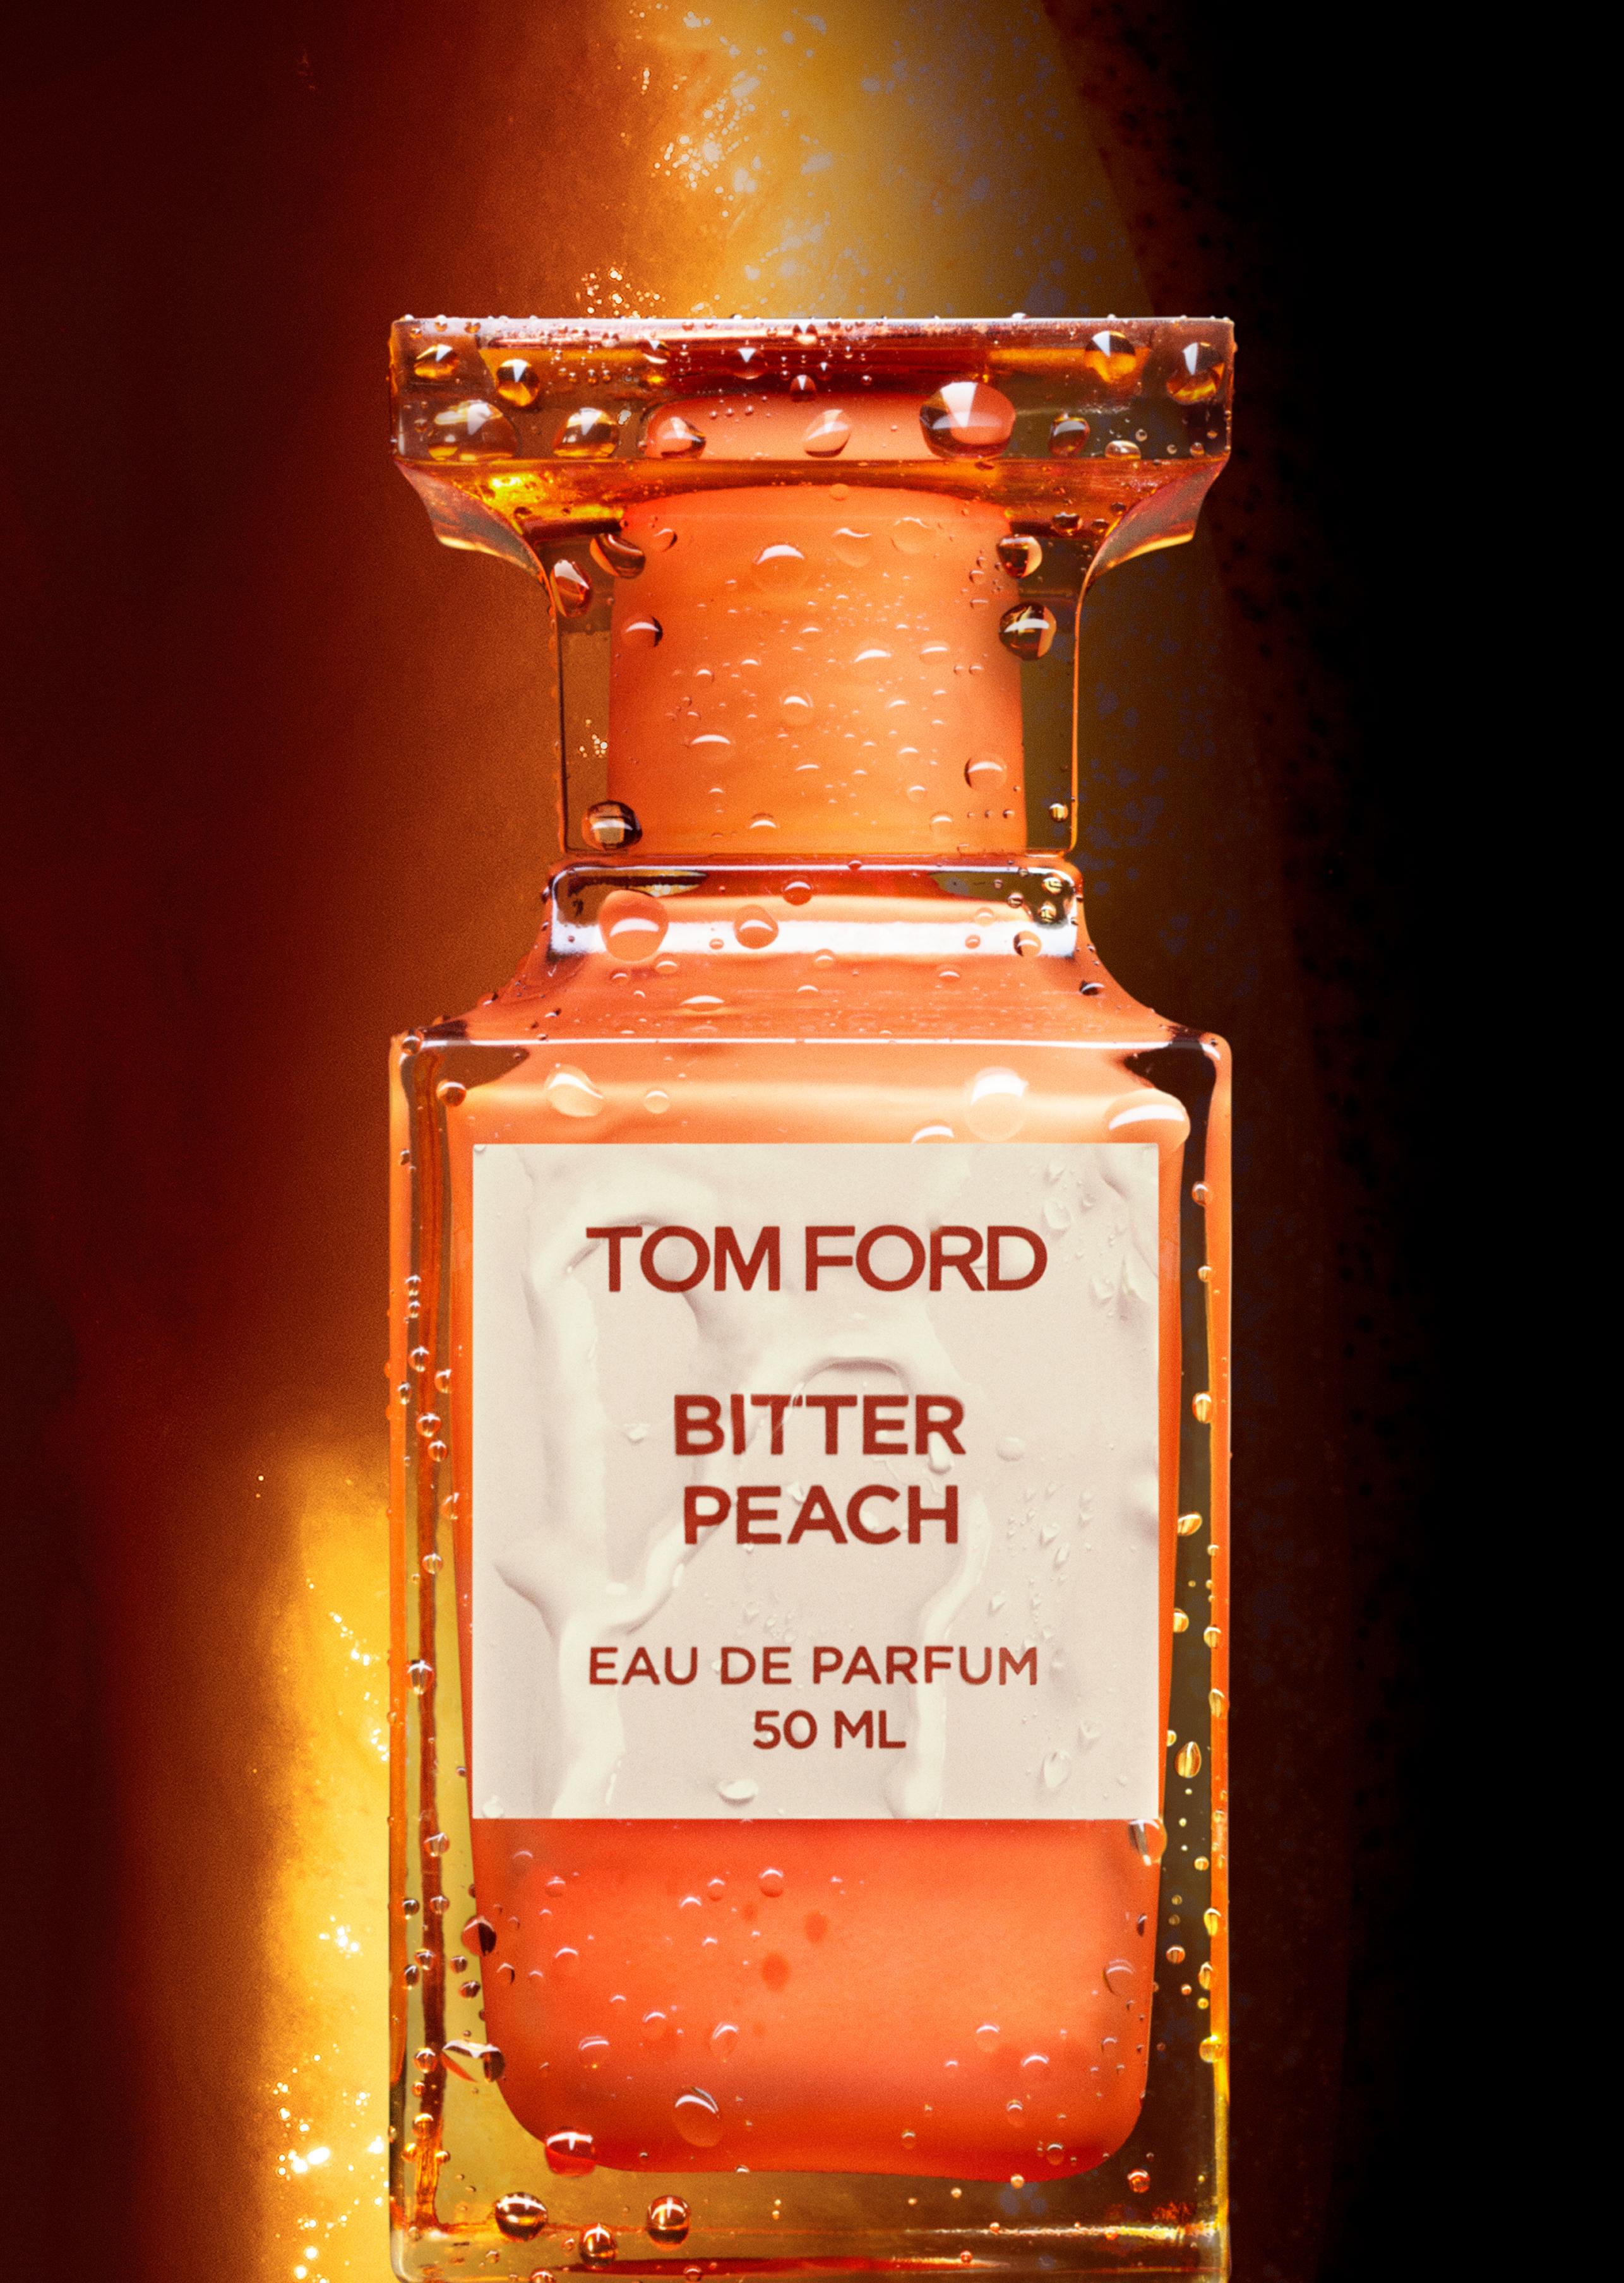 Tom Ford BITTER PEACH EAU DE PARFUM | TomFord.com